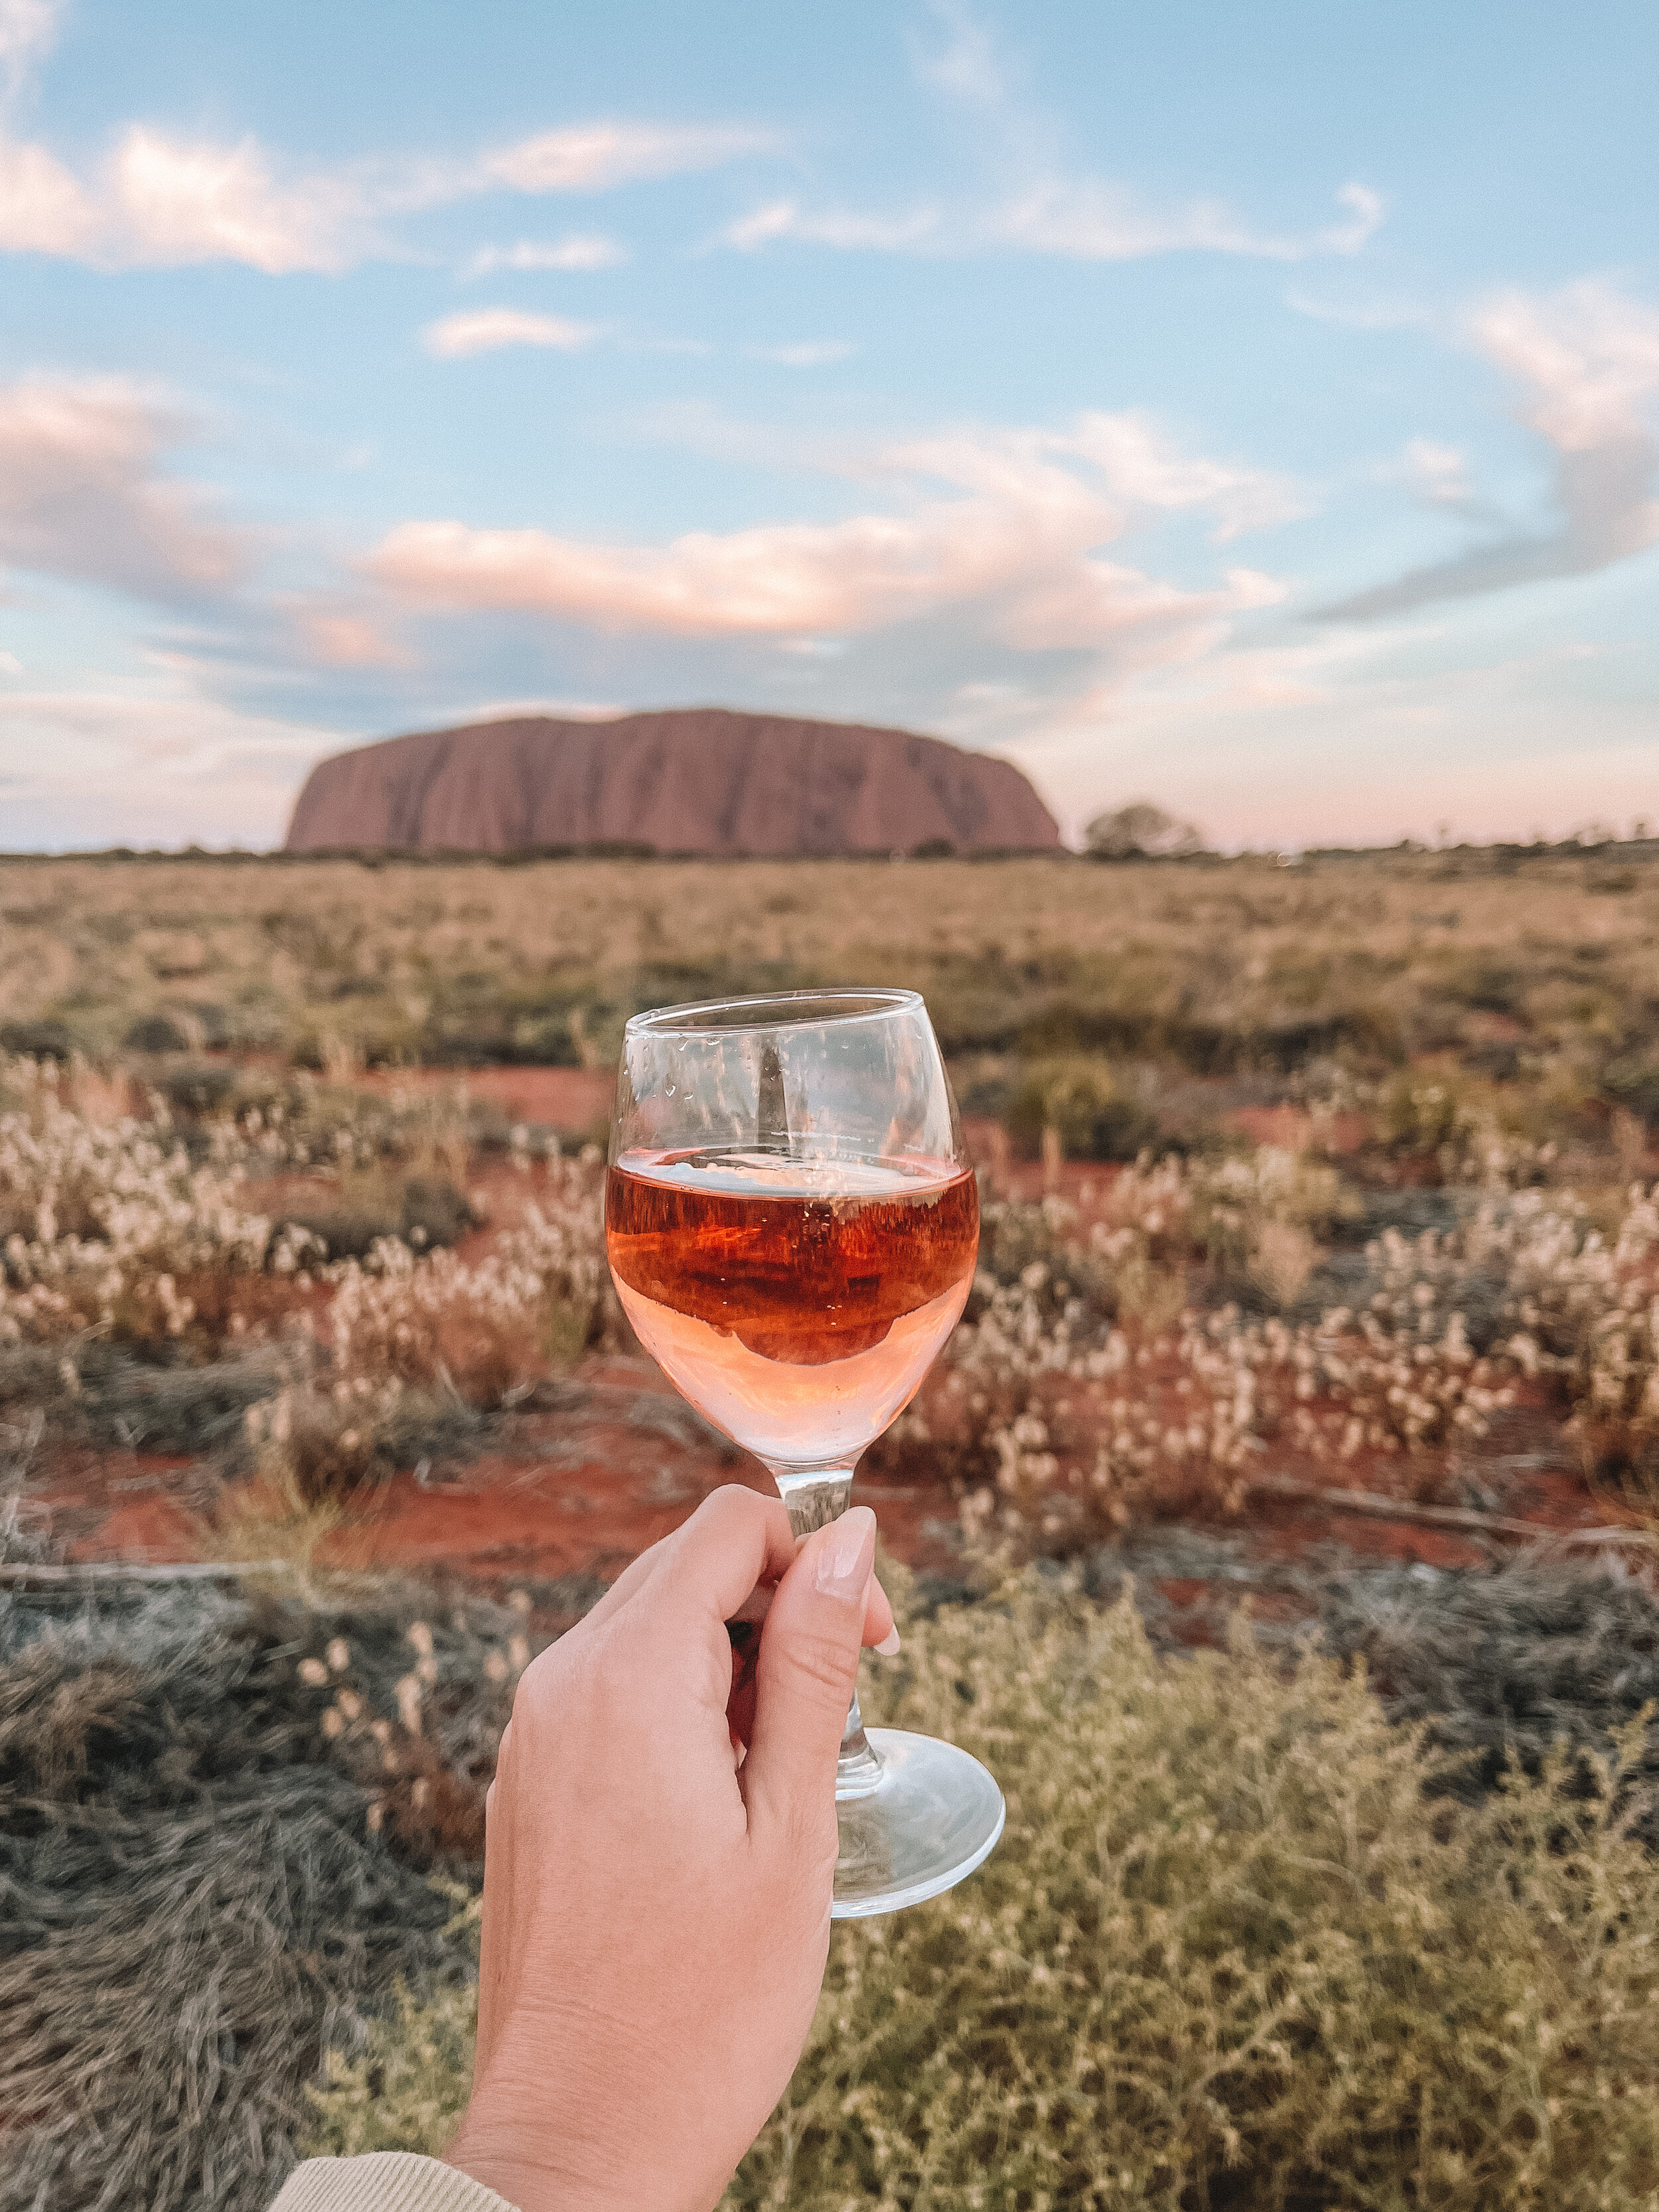 Cheers - Glass of rose - Uluru sunset viewing platform - Uluru - Northern Territory - Australia